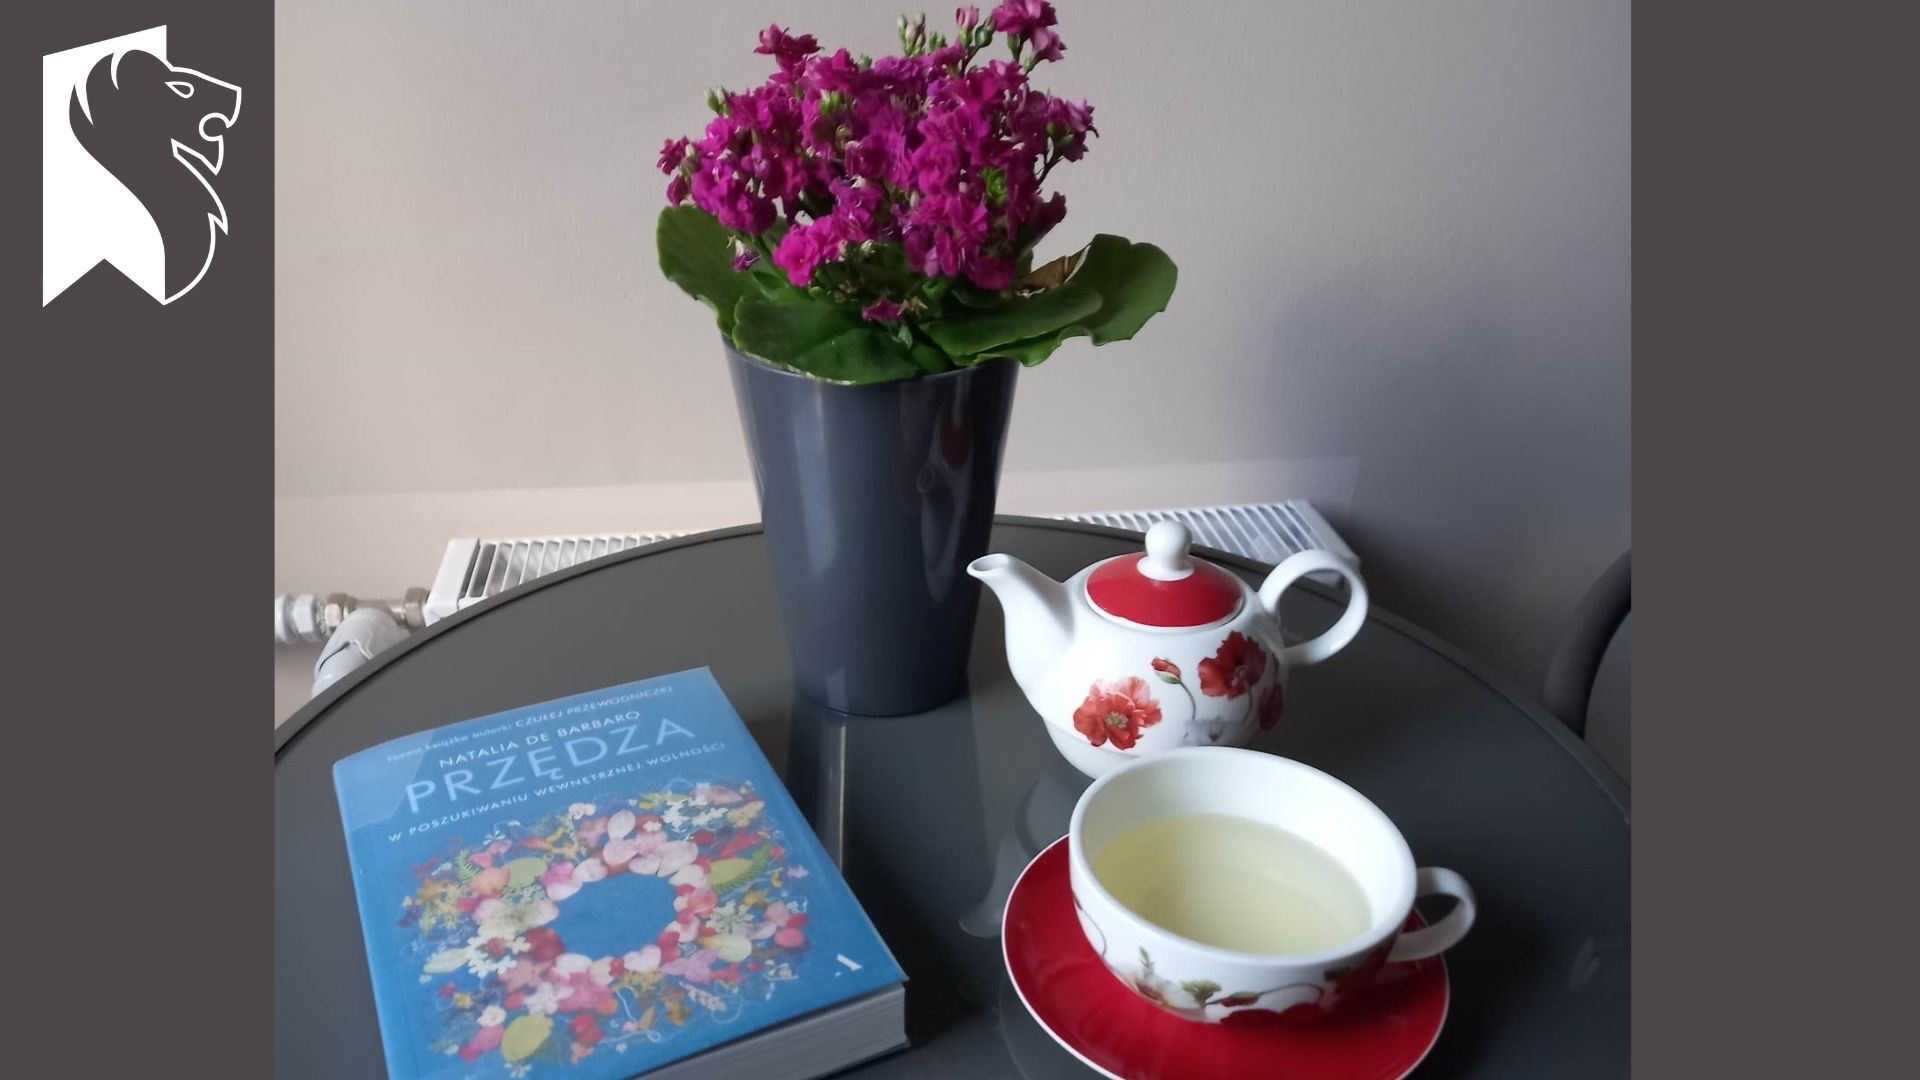 Stoliku leży książka pt. Przędza Natalia de Barbaro. Obok książki stoi kwiat w doniczce, biały dzbanuszek z makami oraz filiżanka z napojem.